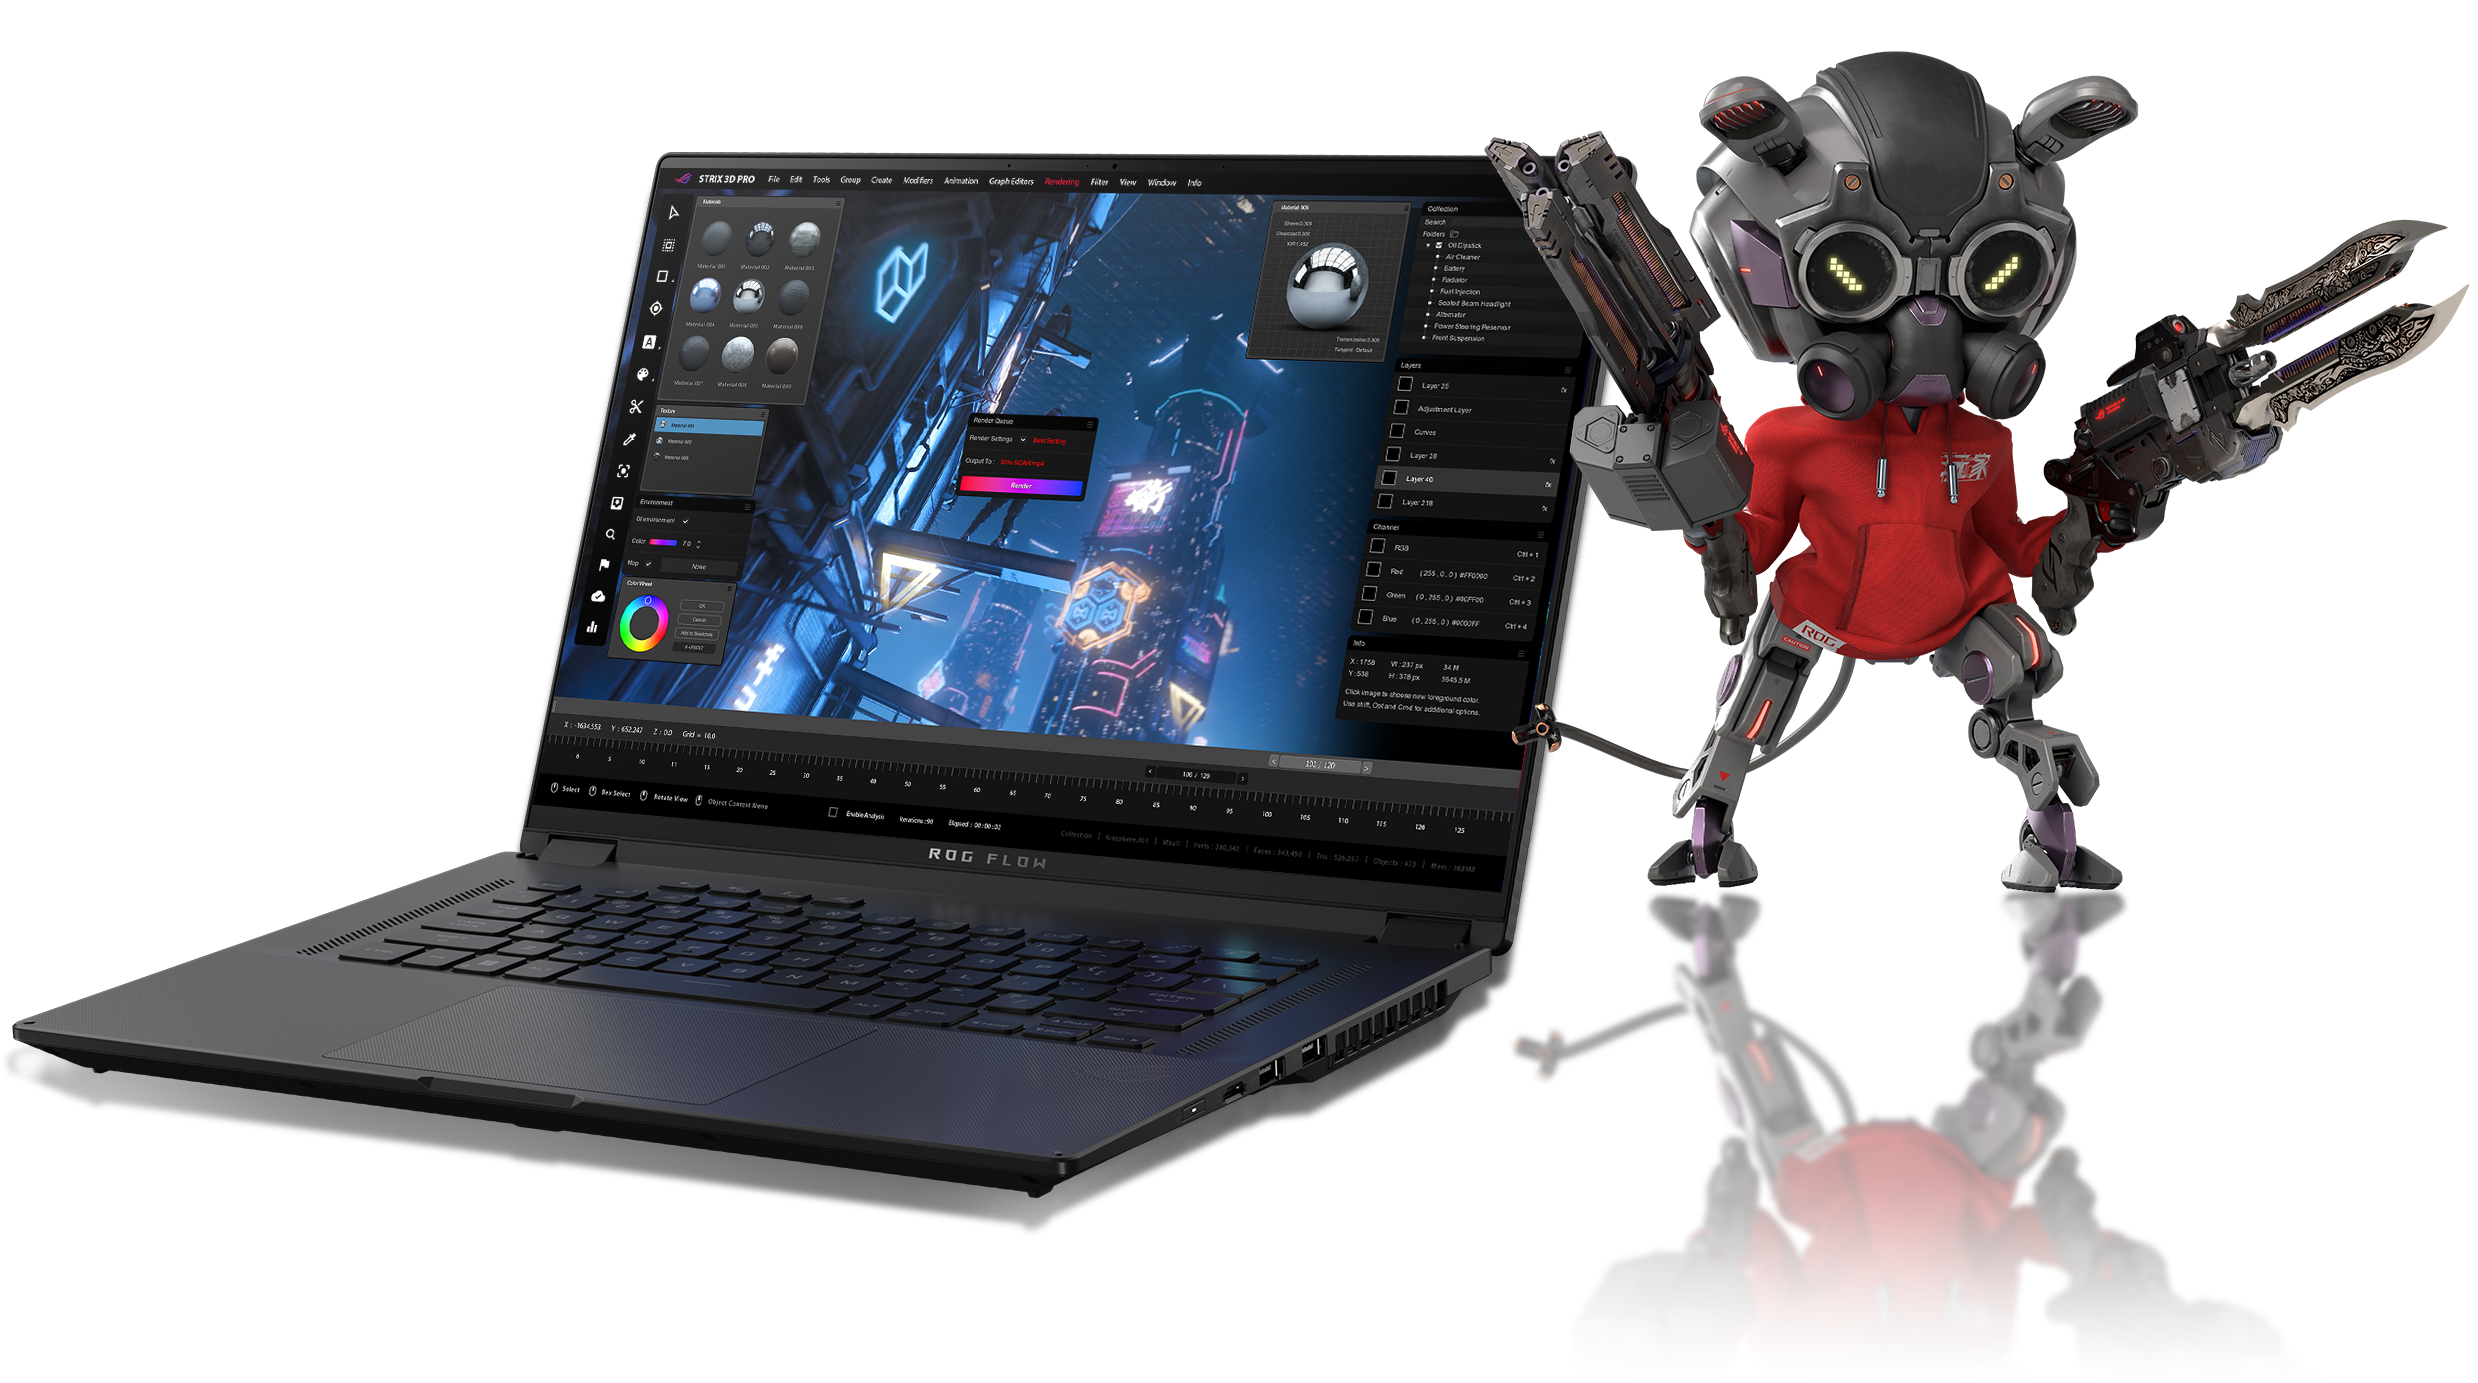 Ноутбук Flow X16, на екрані якого відкрито ROG SAGA, праворуч стоїть персонаж OMNI з двома пістолетами.